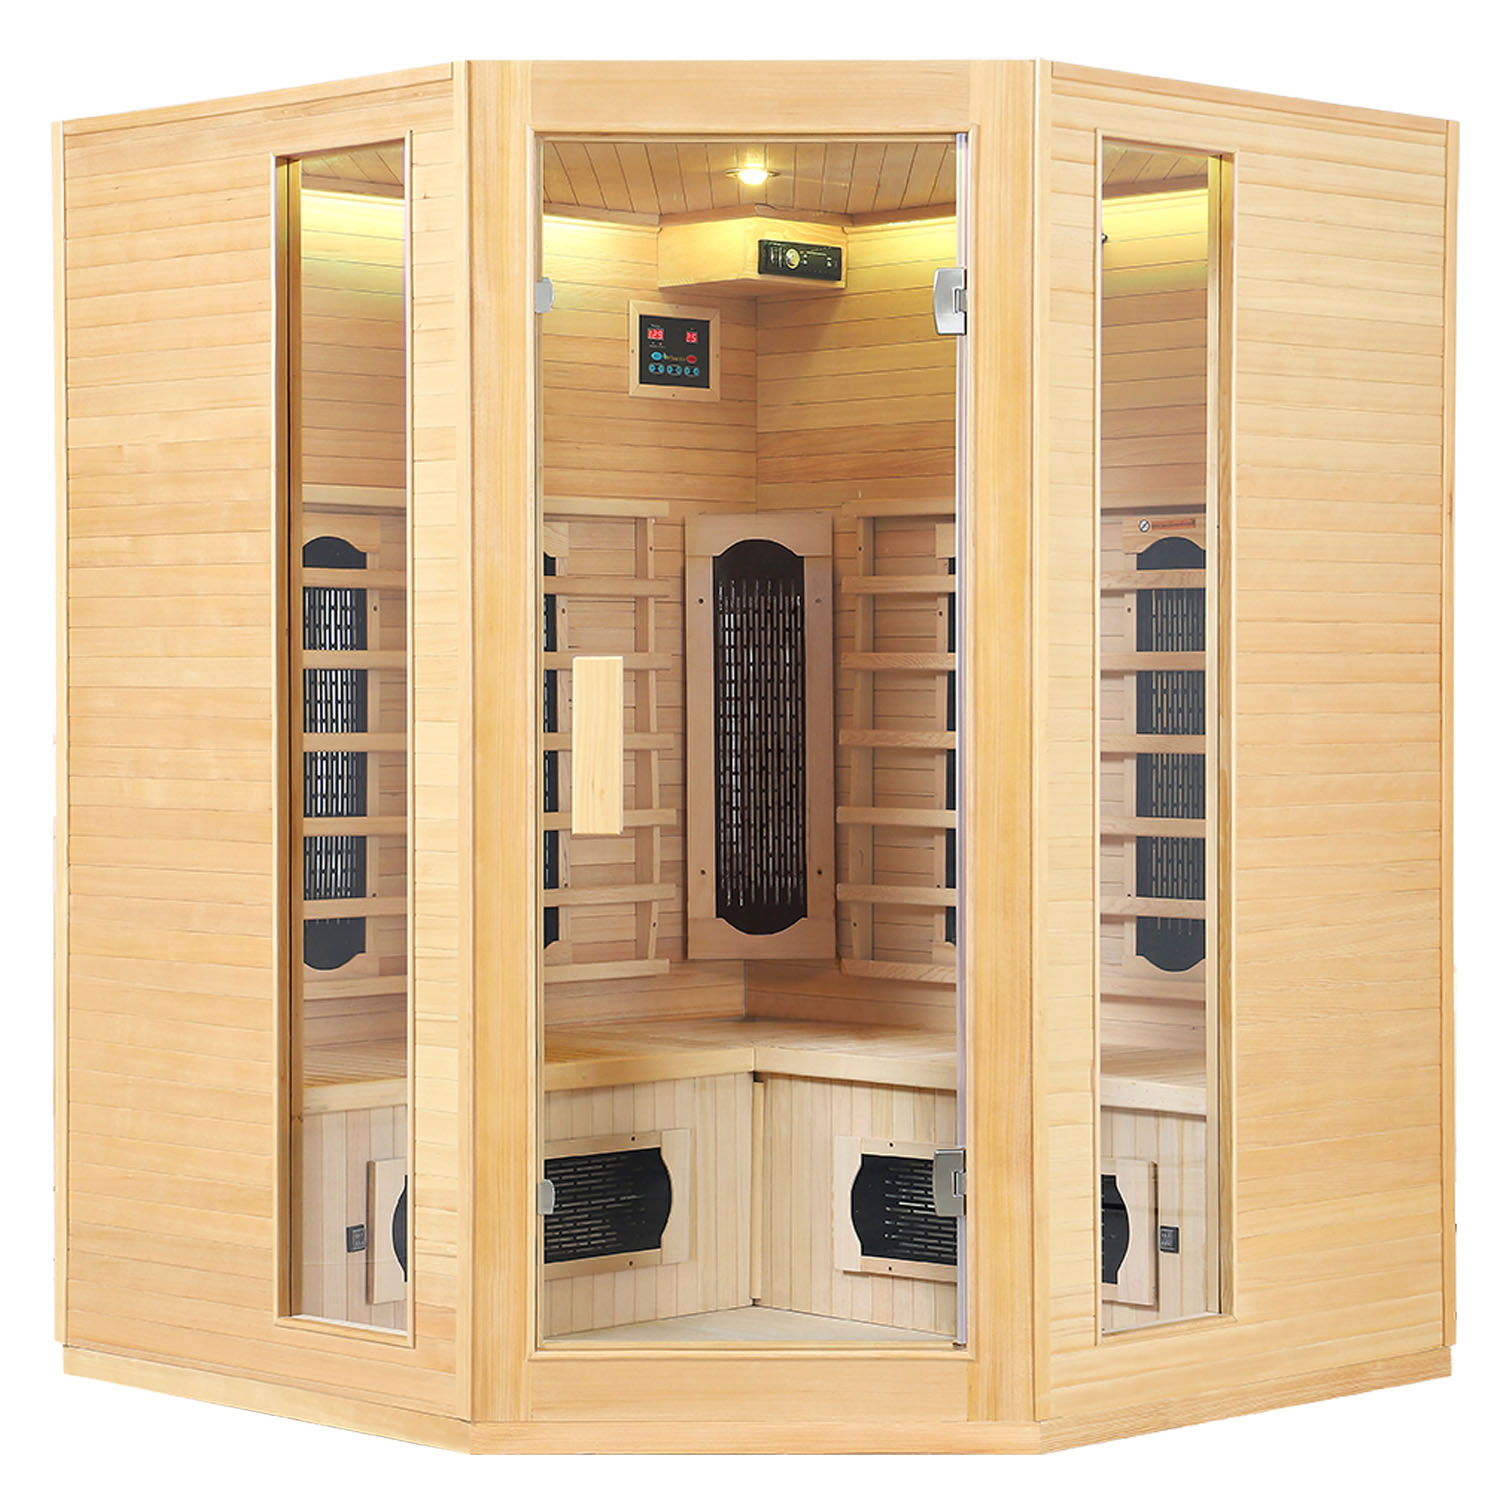 Juskys Infračervená sauna/tepelná kabina Nyborg E150K s keramikou, panelovým radiátorem a dřevem Hemlock